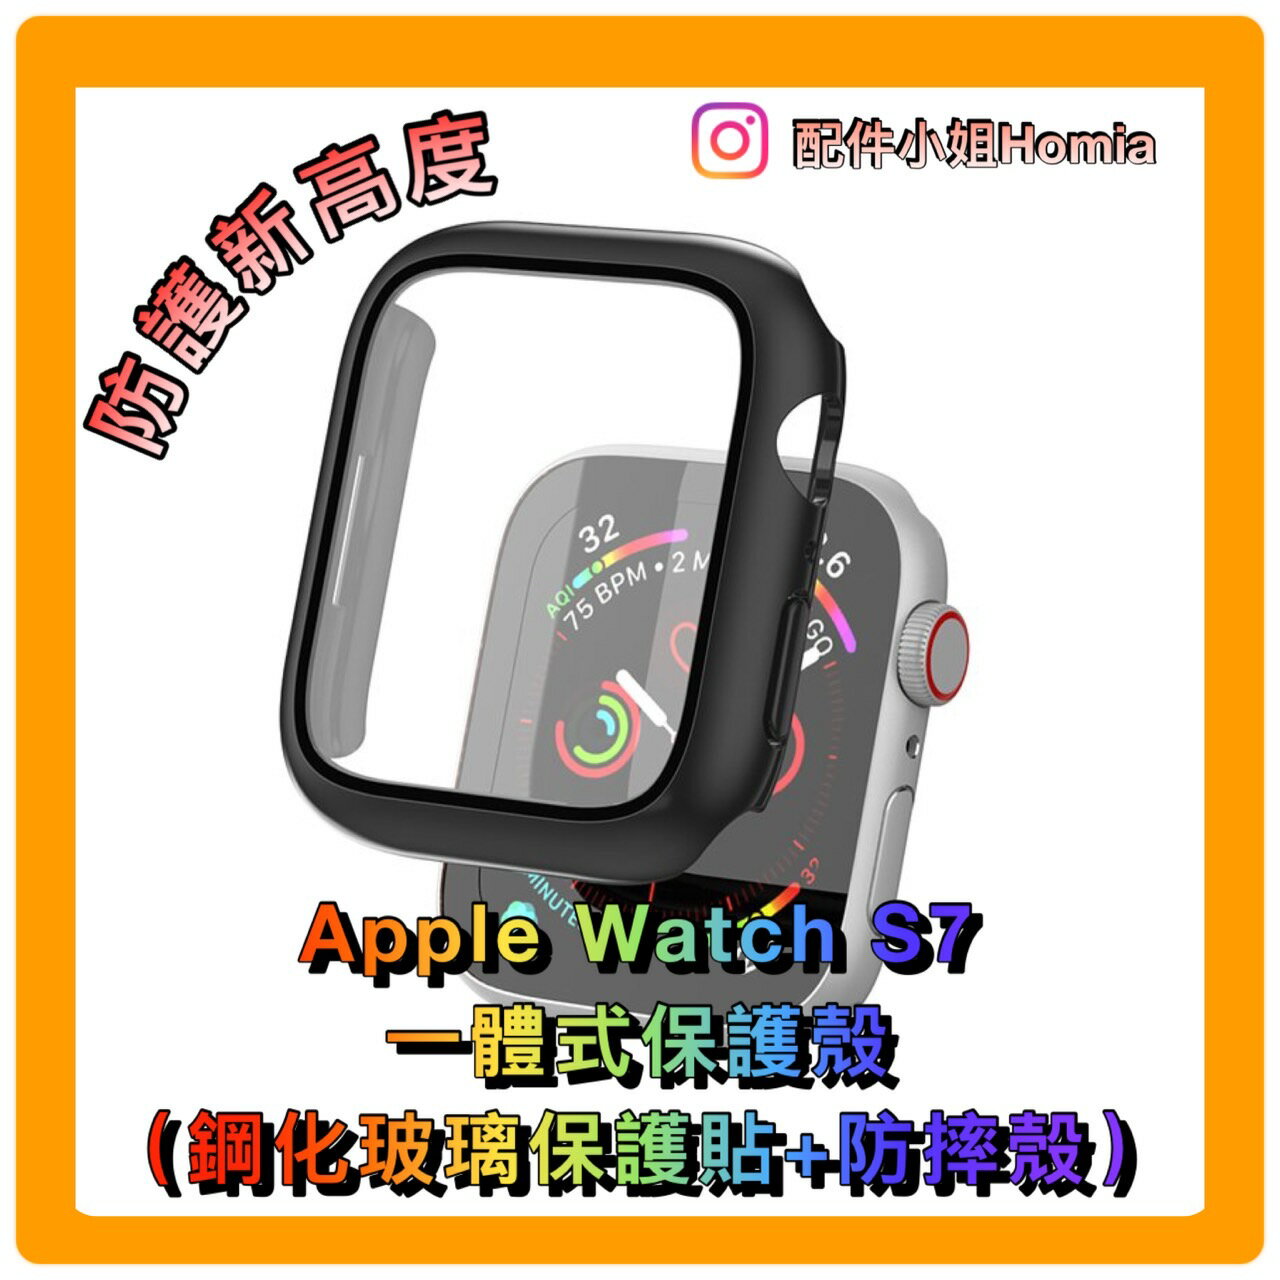 【配件小姐HOMIA】Jtlegend Apple Watch S7 44/45mm防護盾 apple watch 7 保護殼 一體成形保護殼【全館滿$499免運】